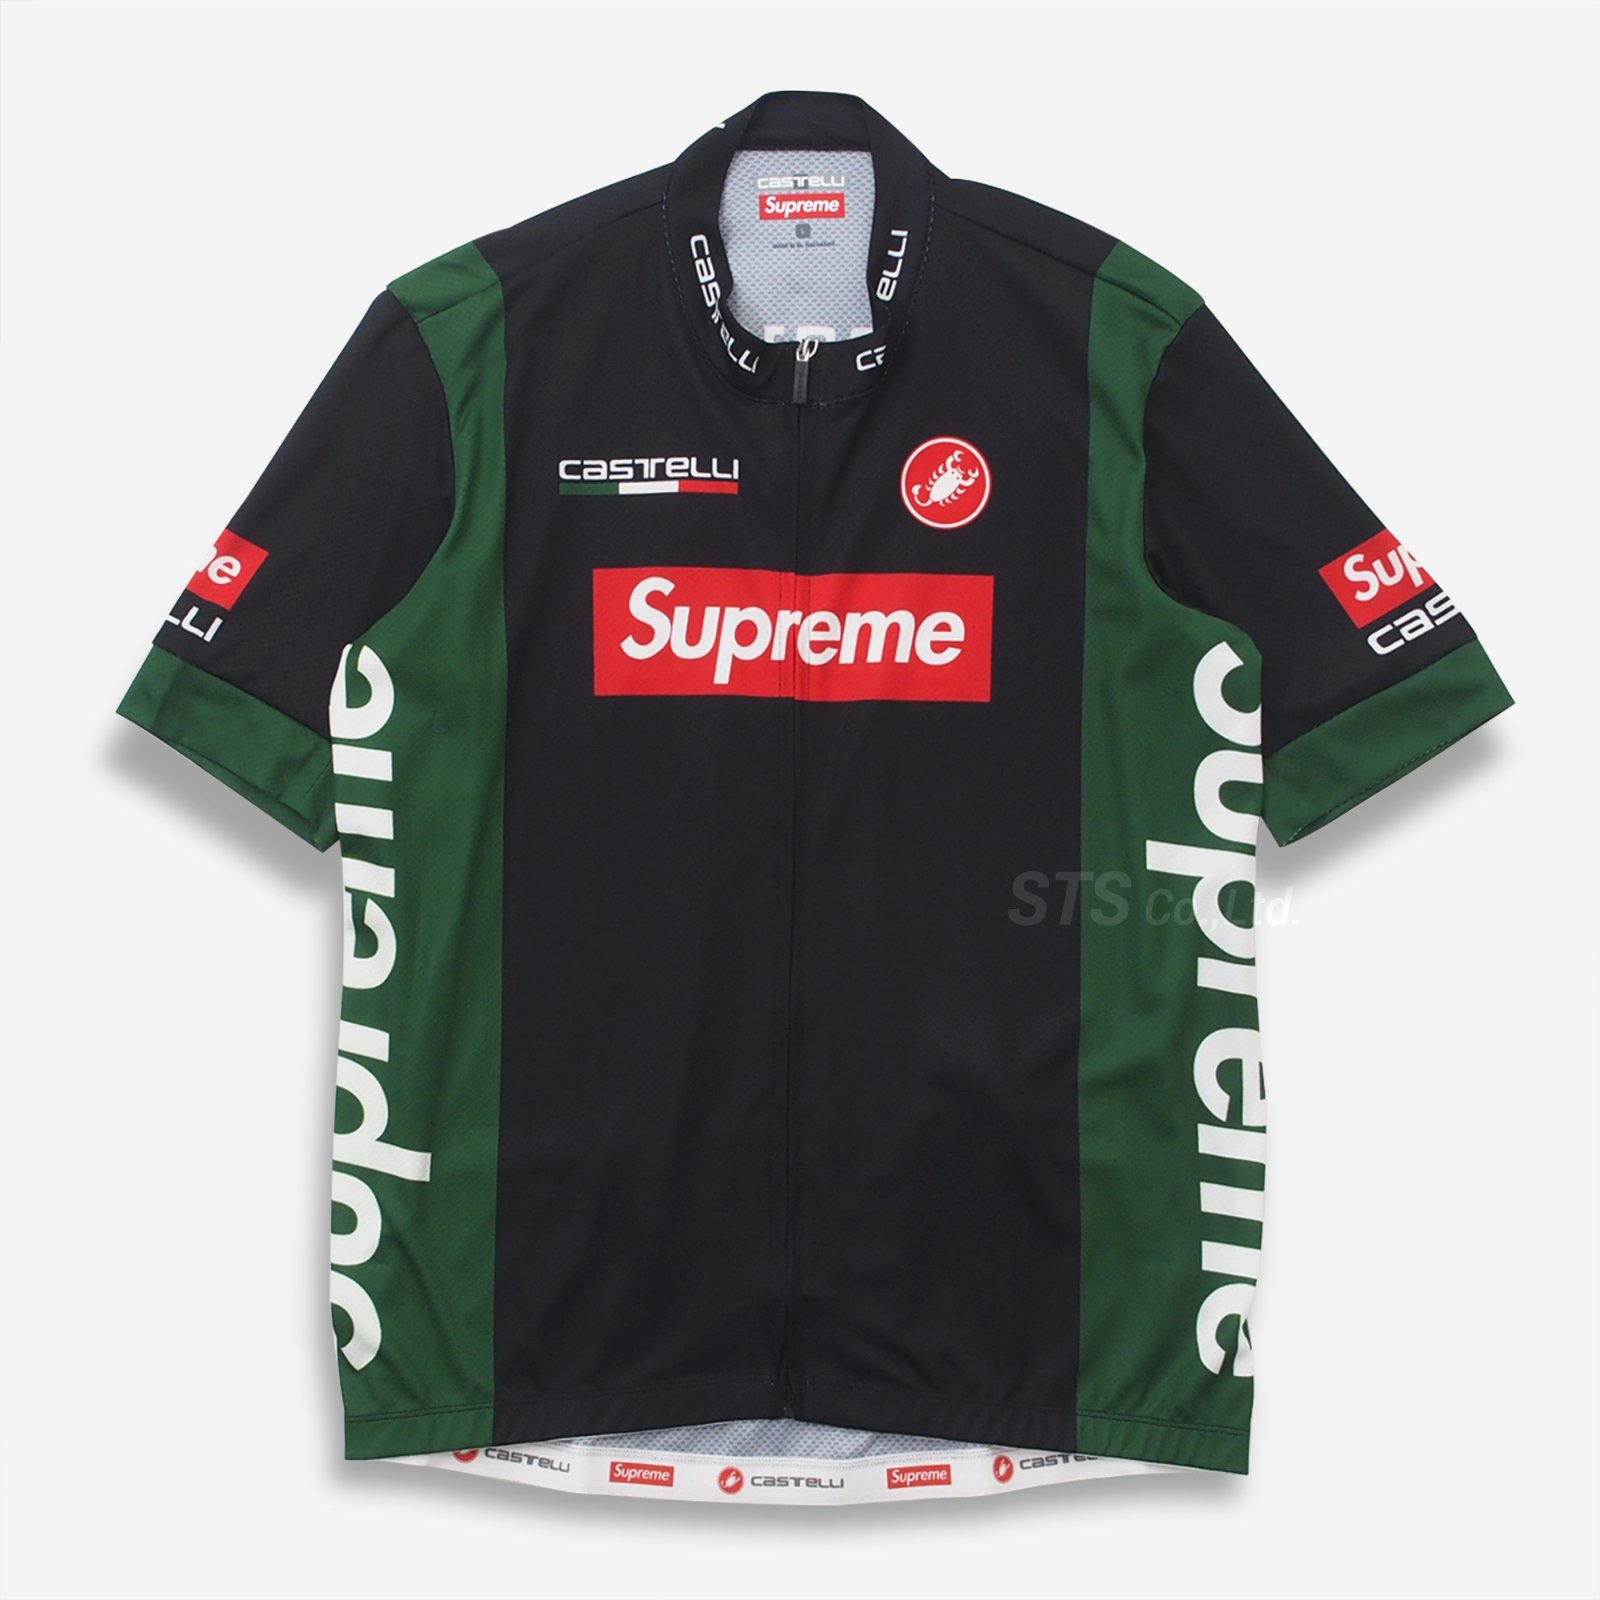 Supreme® Castelli Cycling Jersey シュプリーム